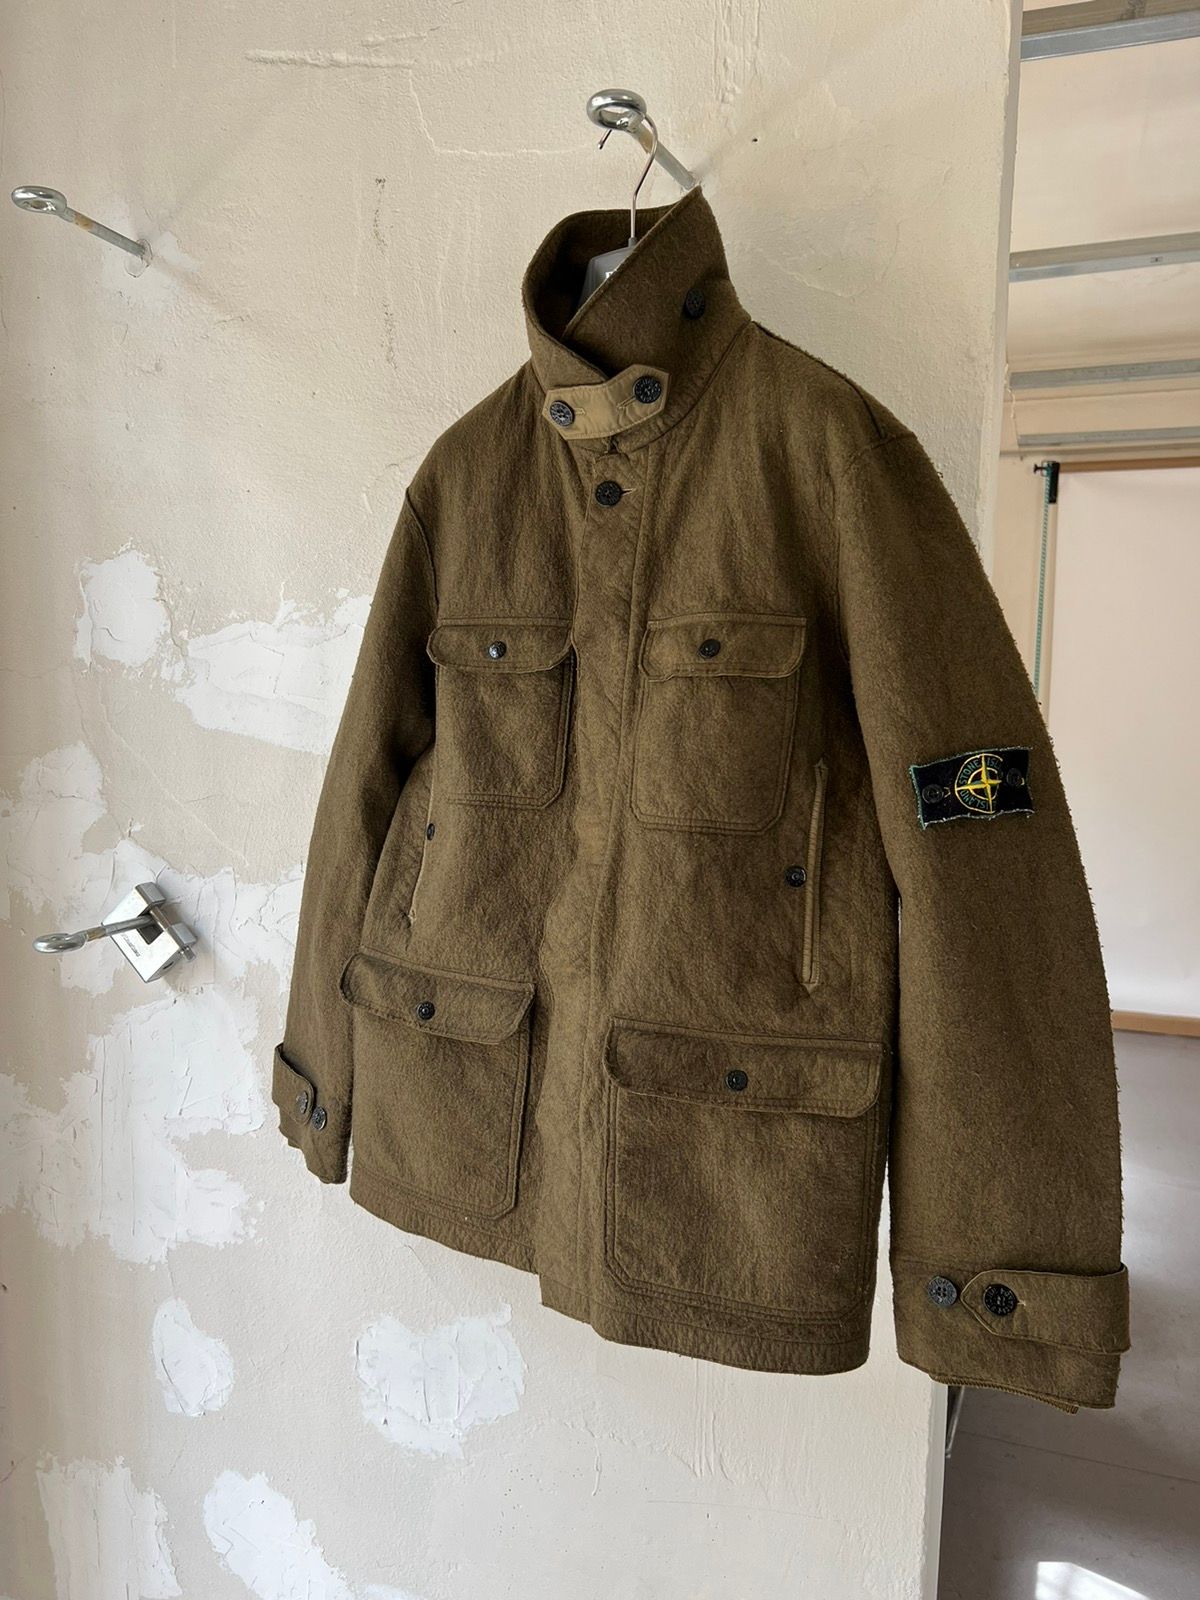 Pre-owned Avant Garde X Italian Designers Stone Island 2005 Parka Wool Blazer Jacket In Dark Green Moss